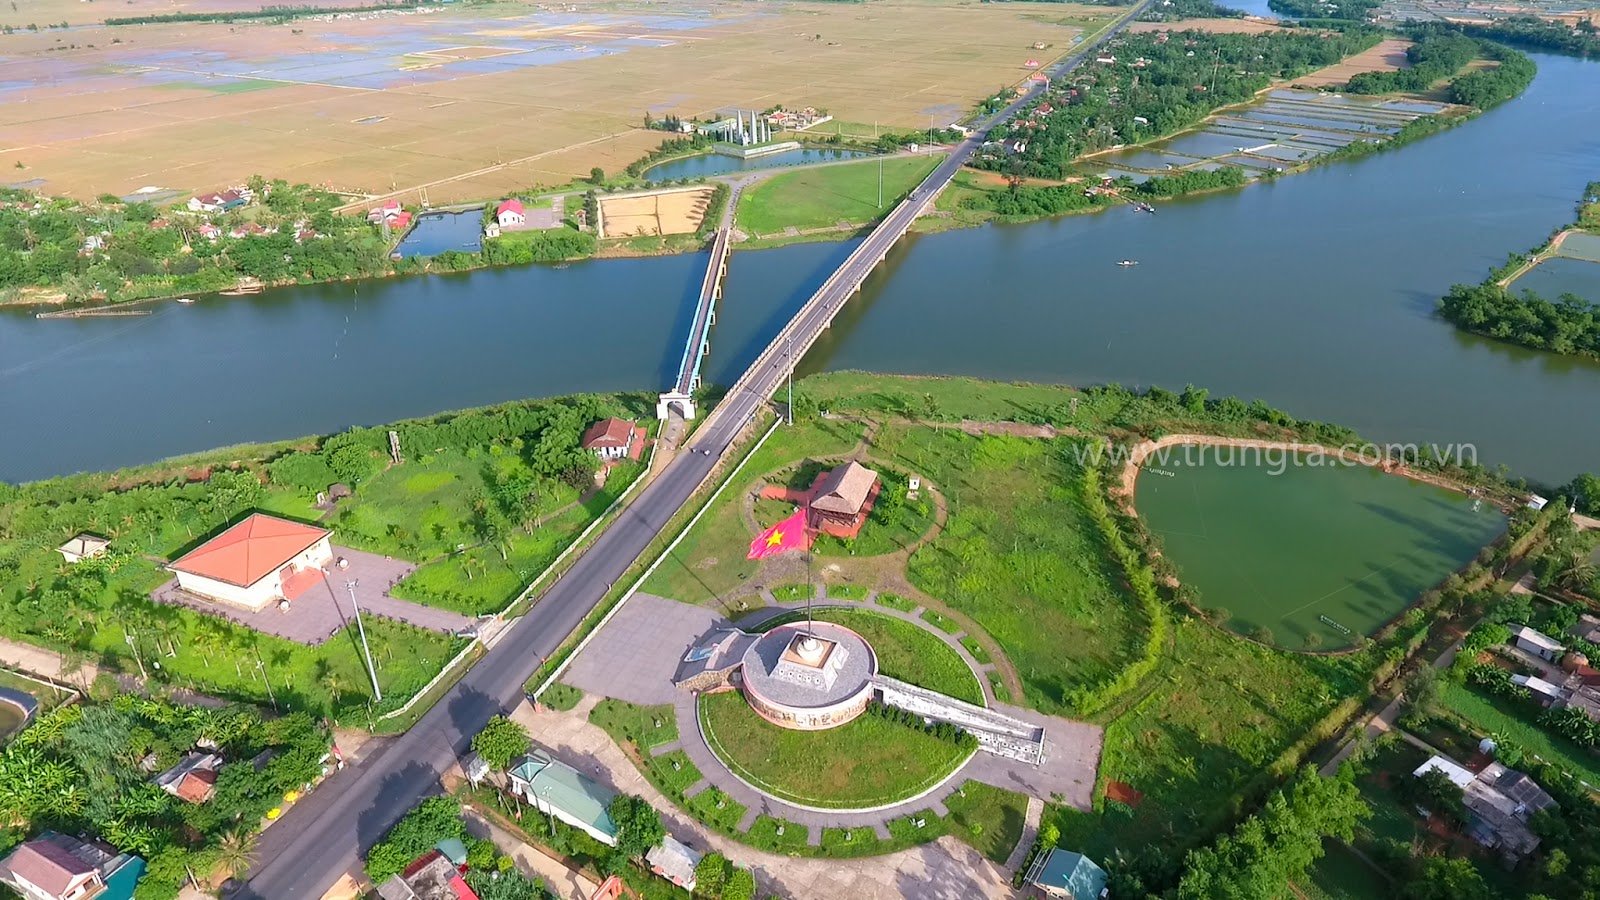 29 dự án đầu tư vào Quảng Trị với gần 100.000 tỷ đồng